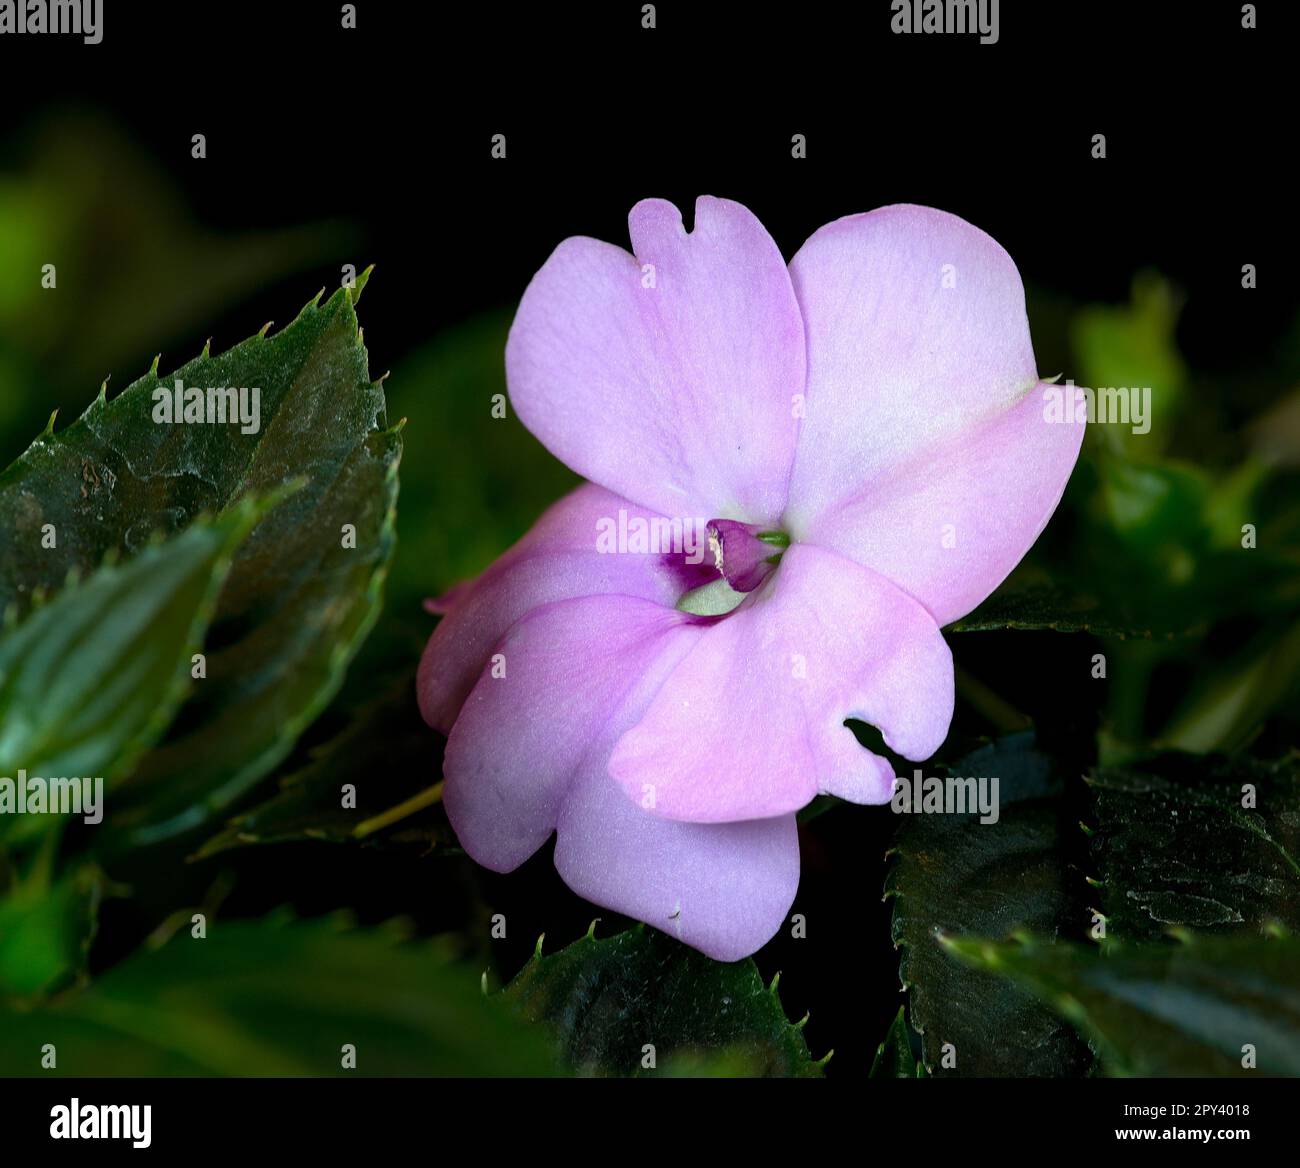 Immagine closeup di una singola fioritura rosa delle impatiens della Nuova Guinea (Impatiens hawkeri). Foto Stock